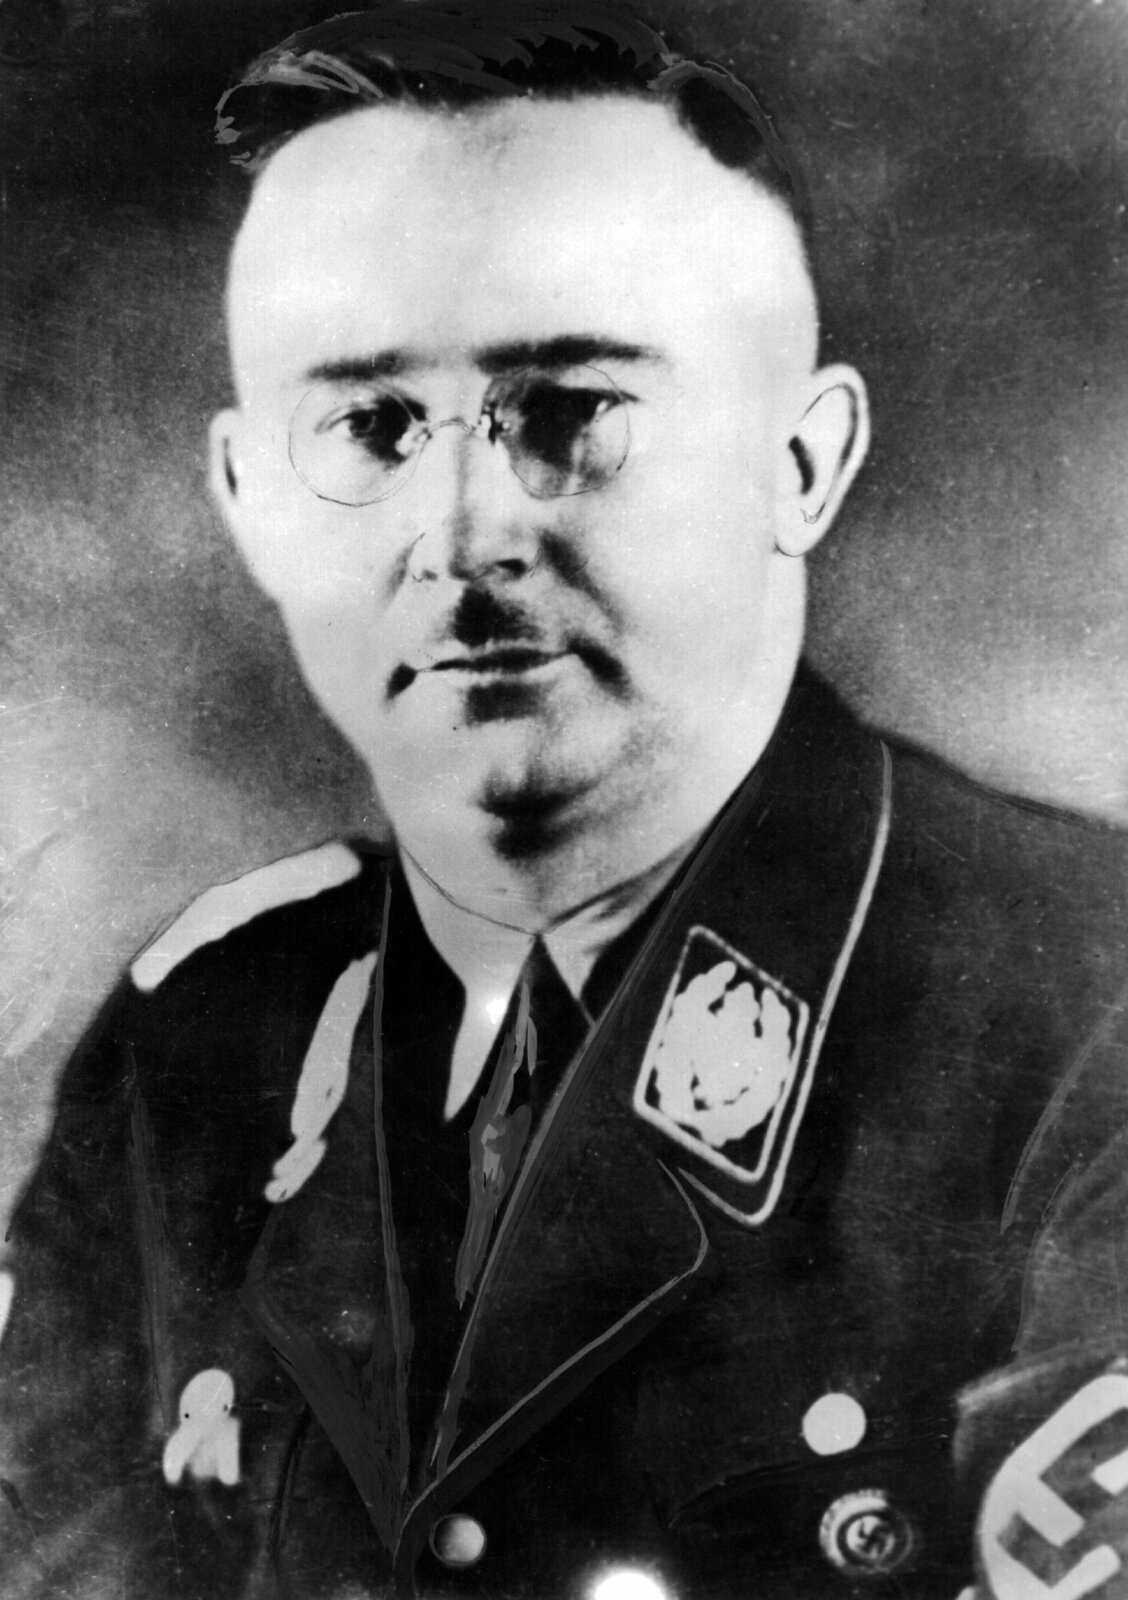 Rozkaz ke krádeži zlata dal sám Himmler.